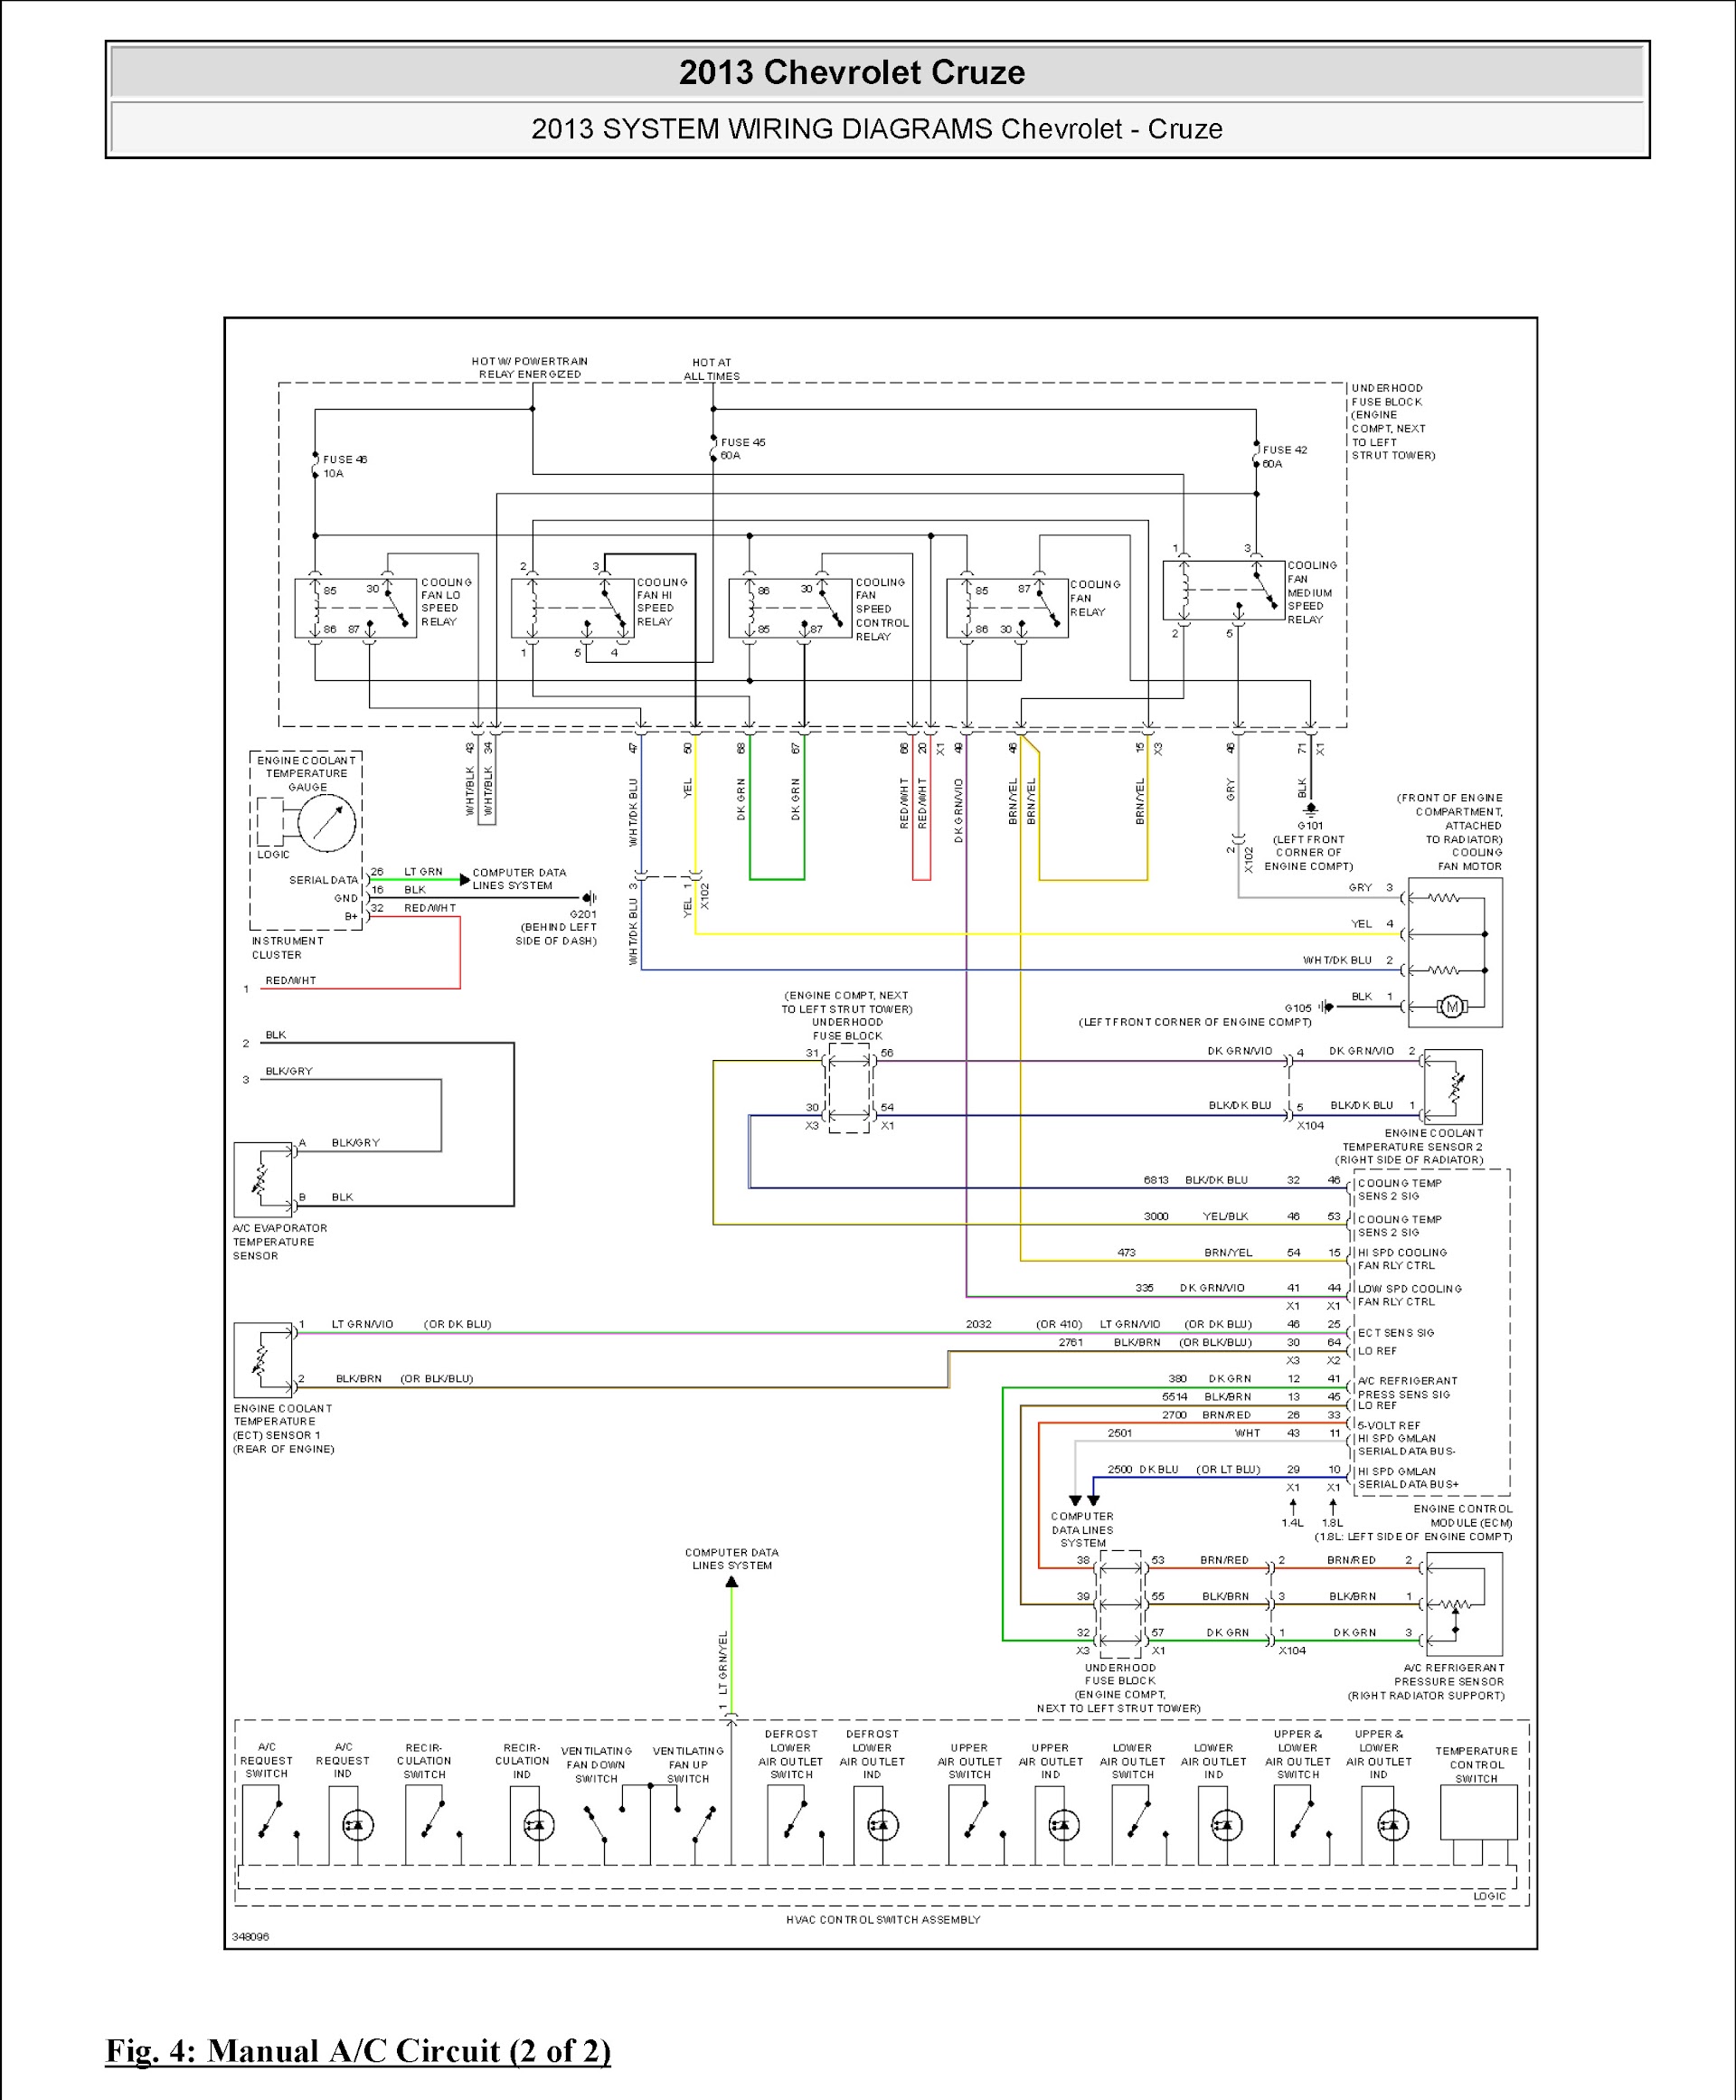 CONTENTS: 2010-2016 Chevrolet Cruze Repair Manual, wiring diagram